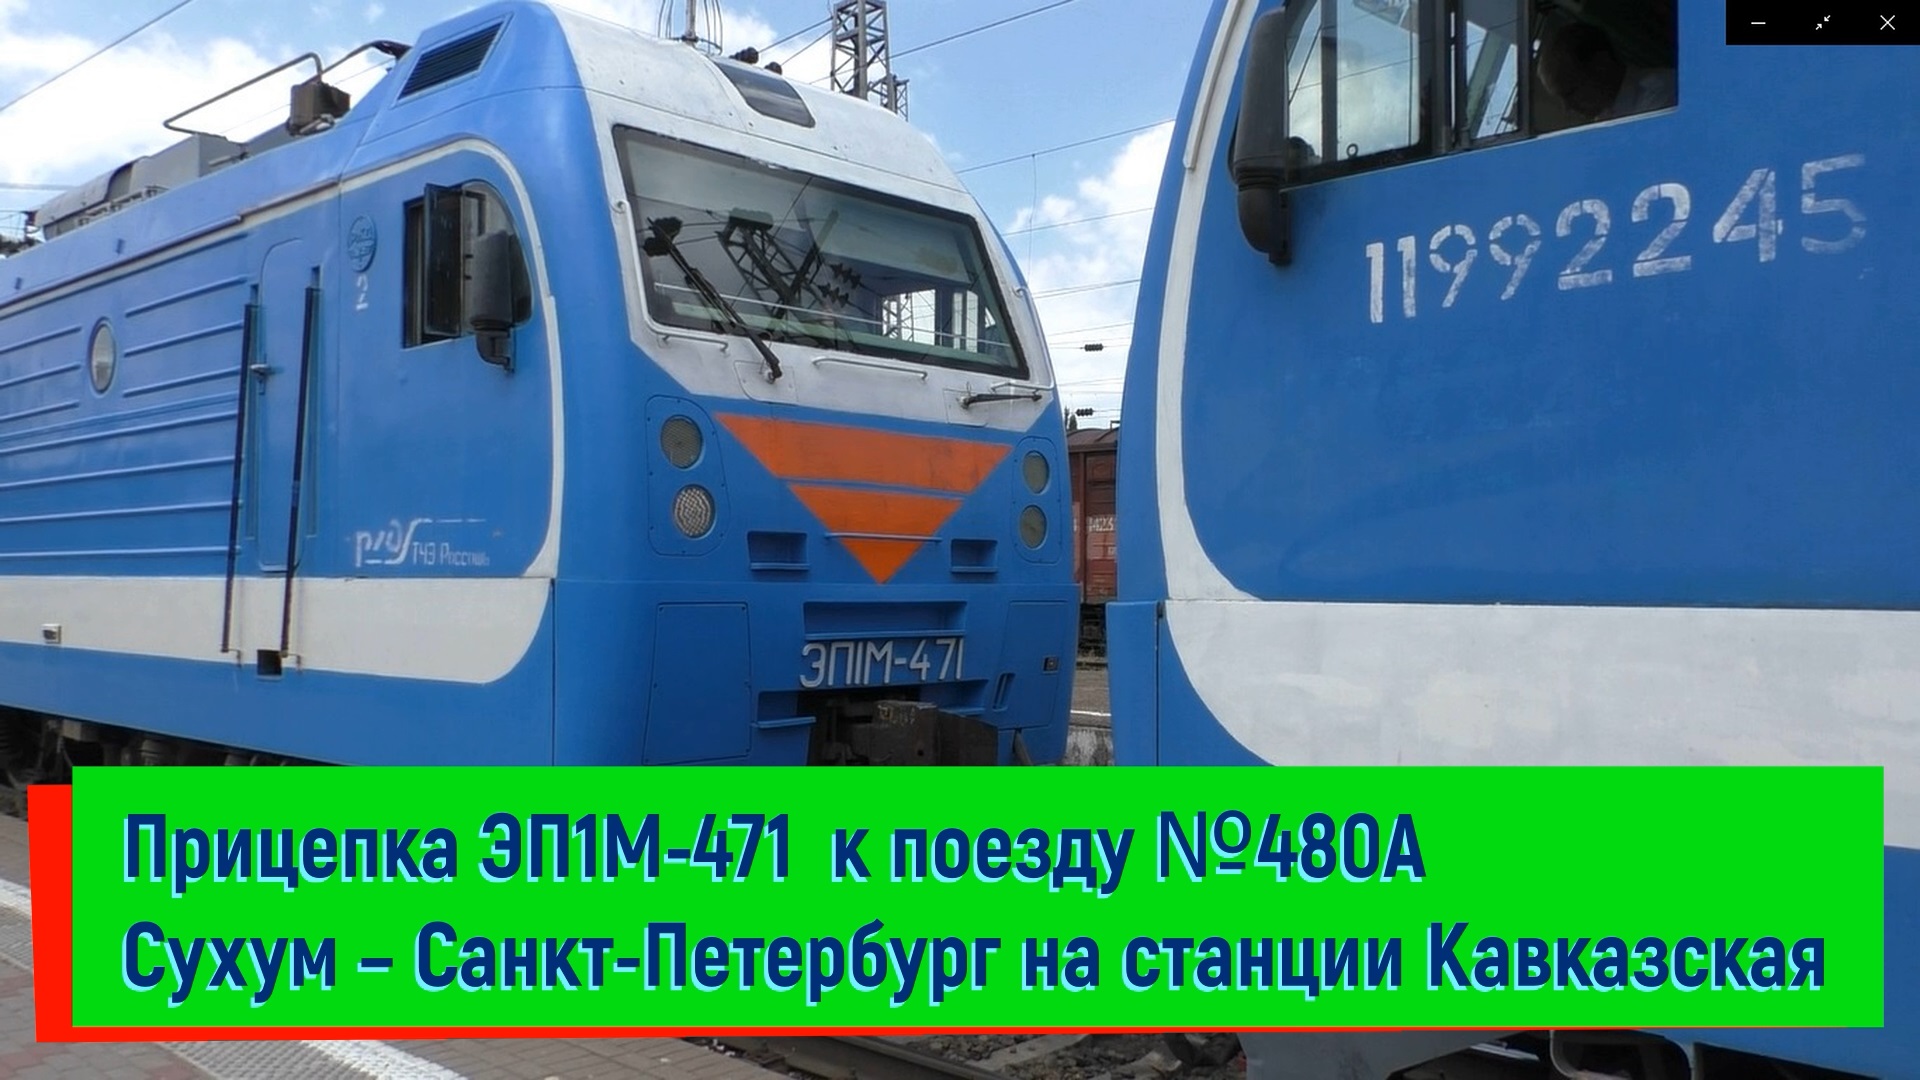 Прицепка ЭП1М-471 к поезду №480А Сухум – Санкт-Петербург на станции Кавказская | EP1M-471